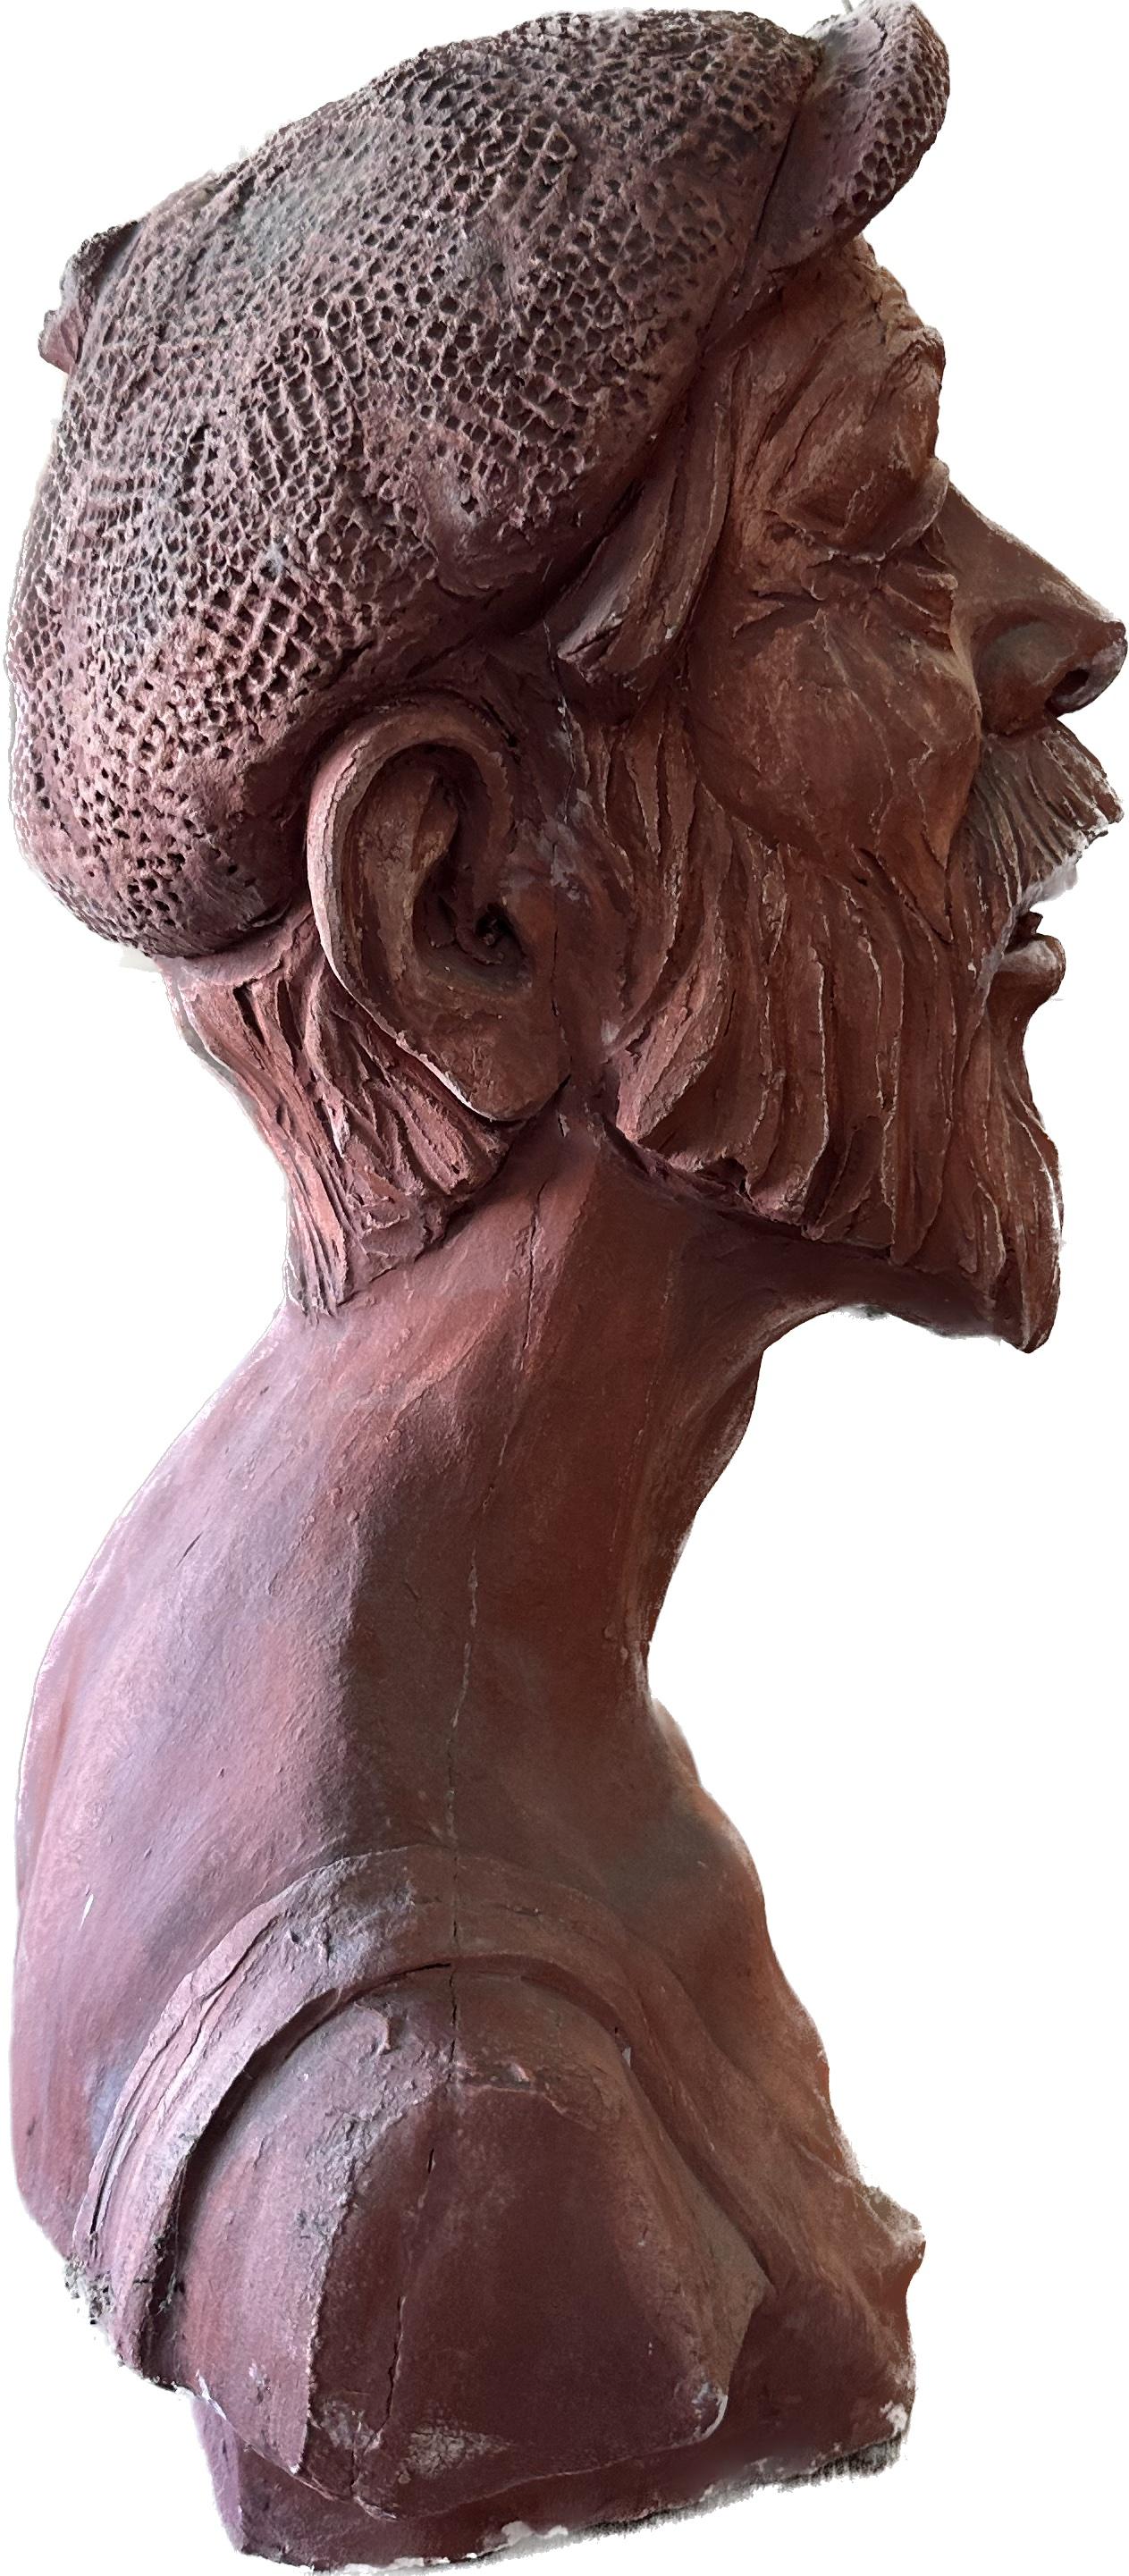 Happy Man, Skulptur, Hydro-Stein, handgefertigt von Garo (Impressionismus), Sculpture, von Karapet Balakeseryan  (Garo)